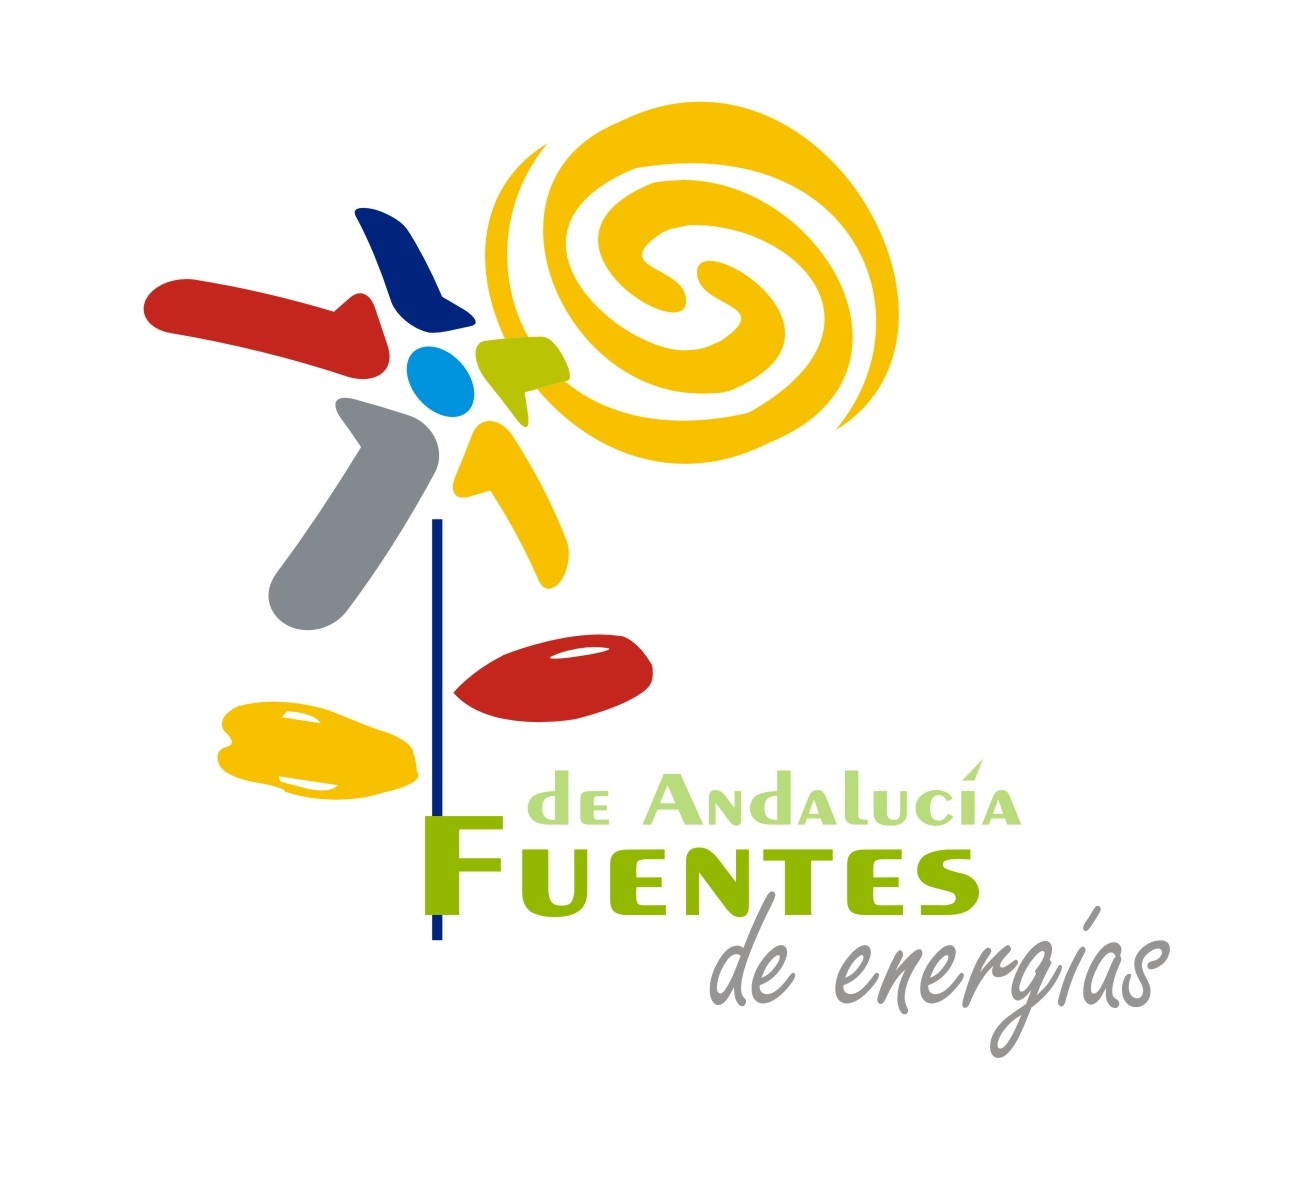 Fuentes de Andaluca Fuentes de Energa. Marca corporativa del Ayuntamiento de Fuentes de Andaluca